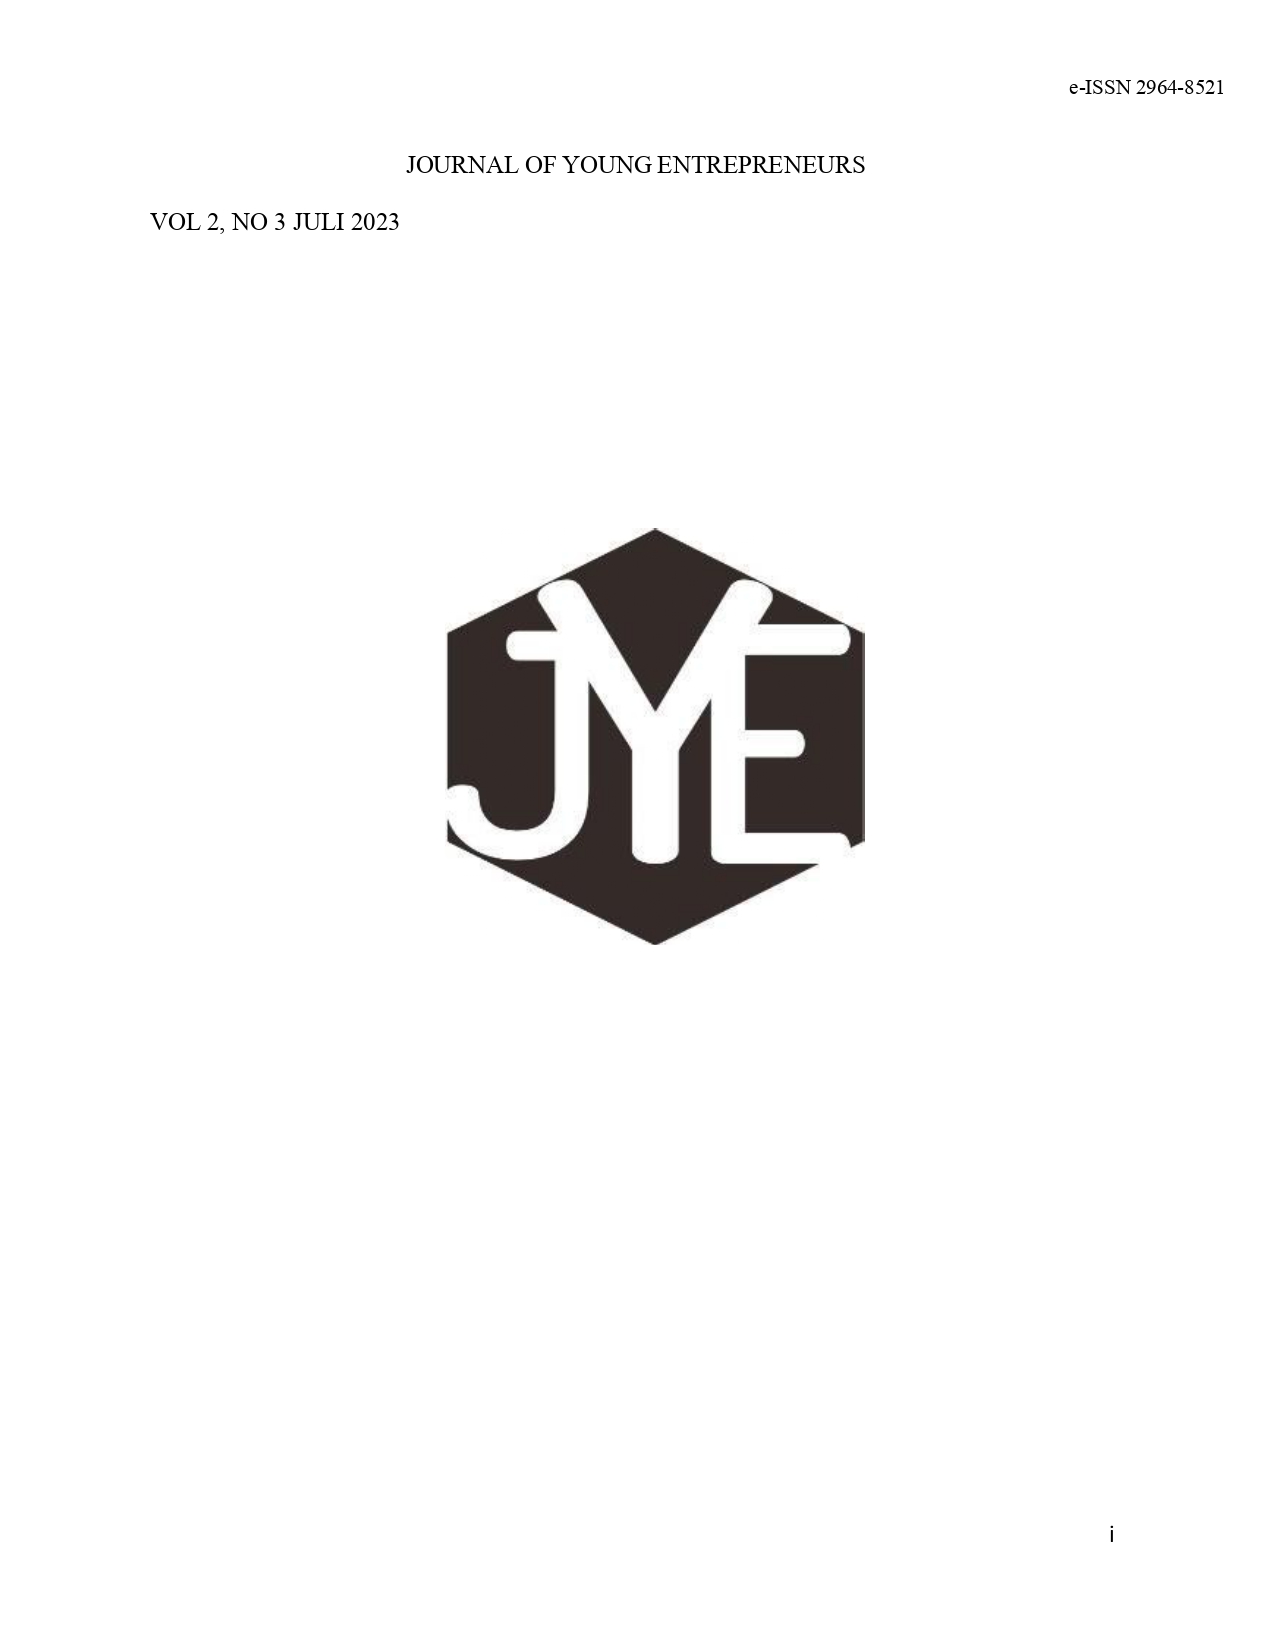 					Lihat Vol 2 No 3 (2023): Journal of Young Entrepreneurs Vol 2 No 3 Juli 2023
				